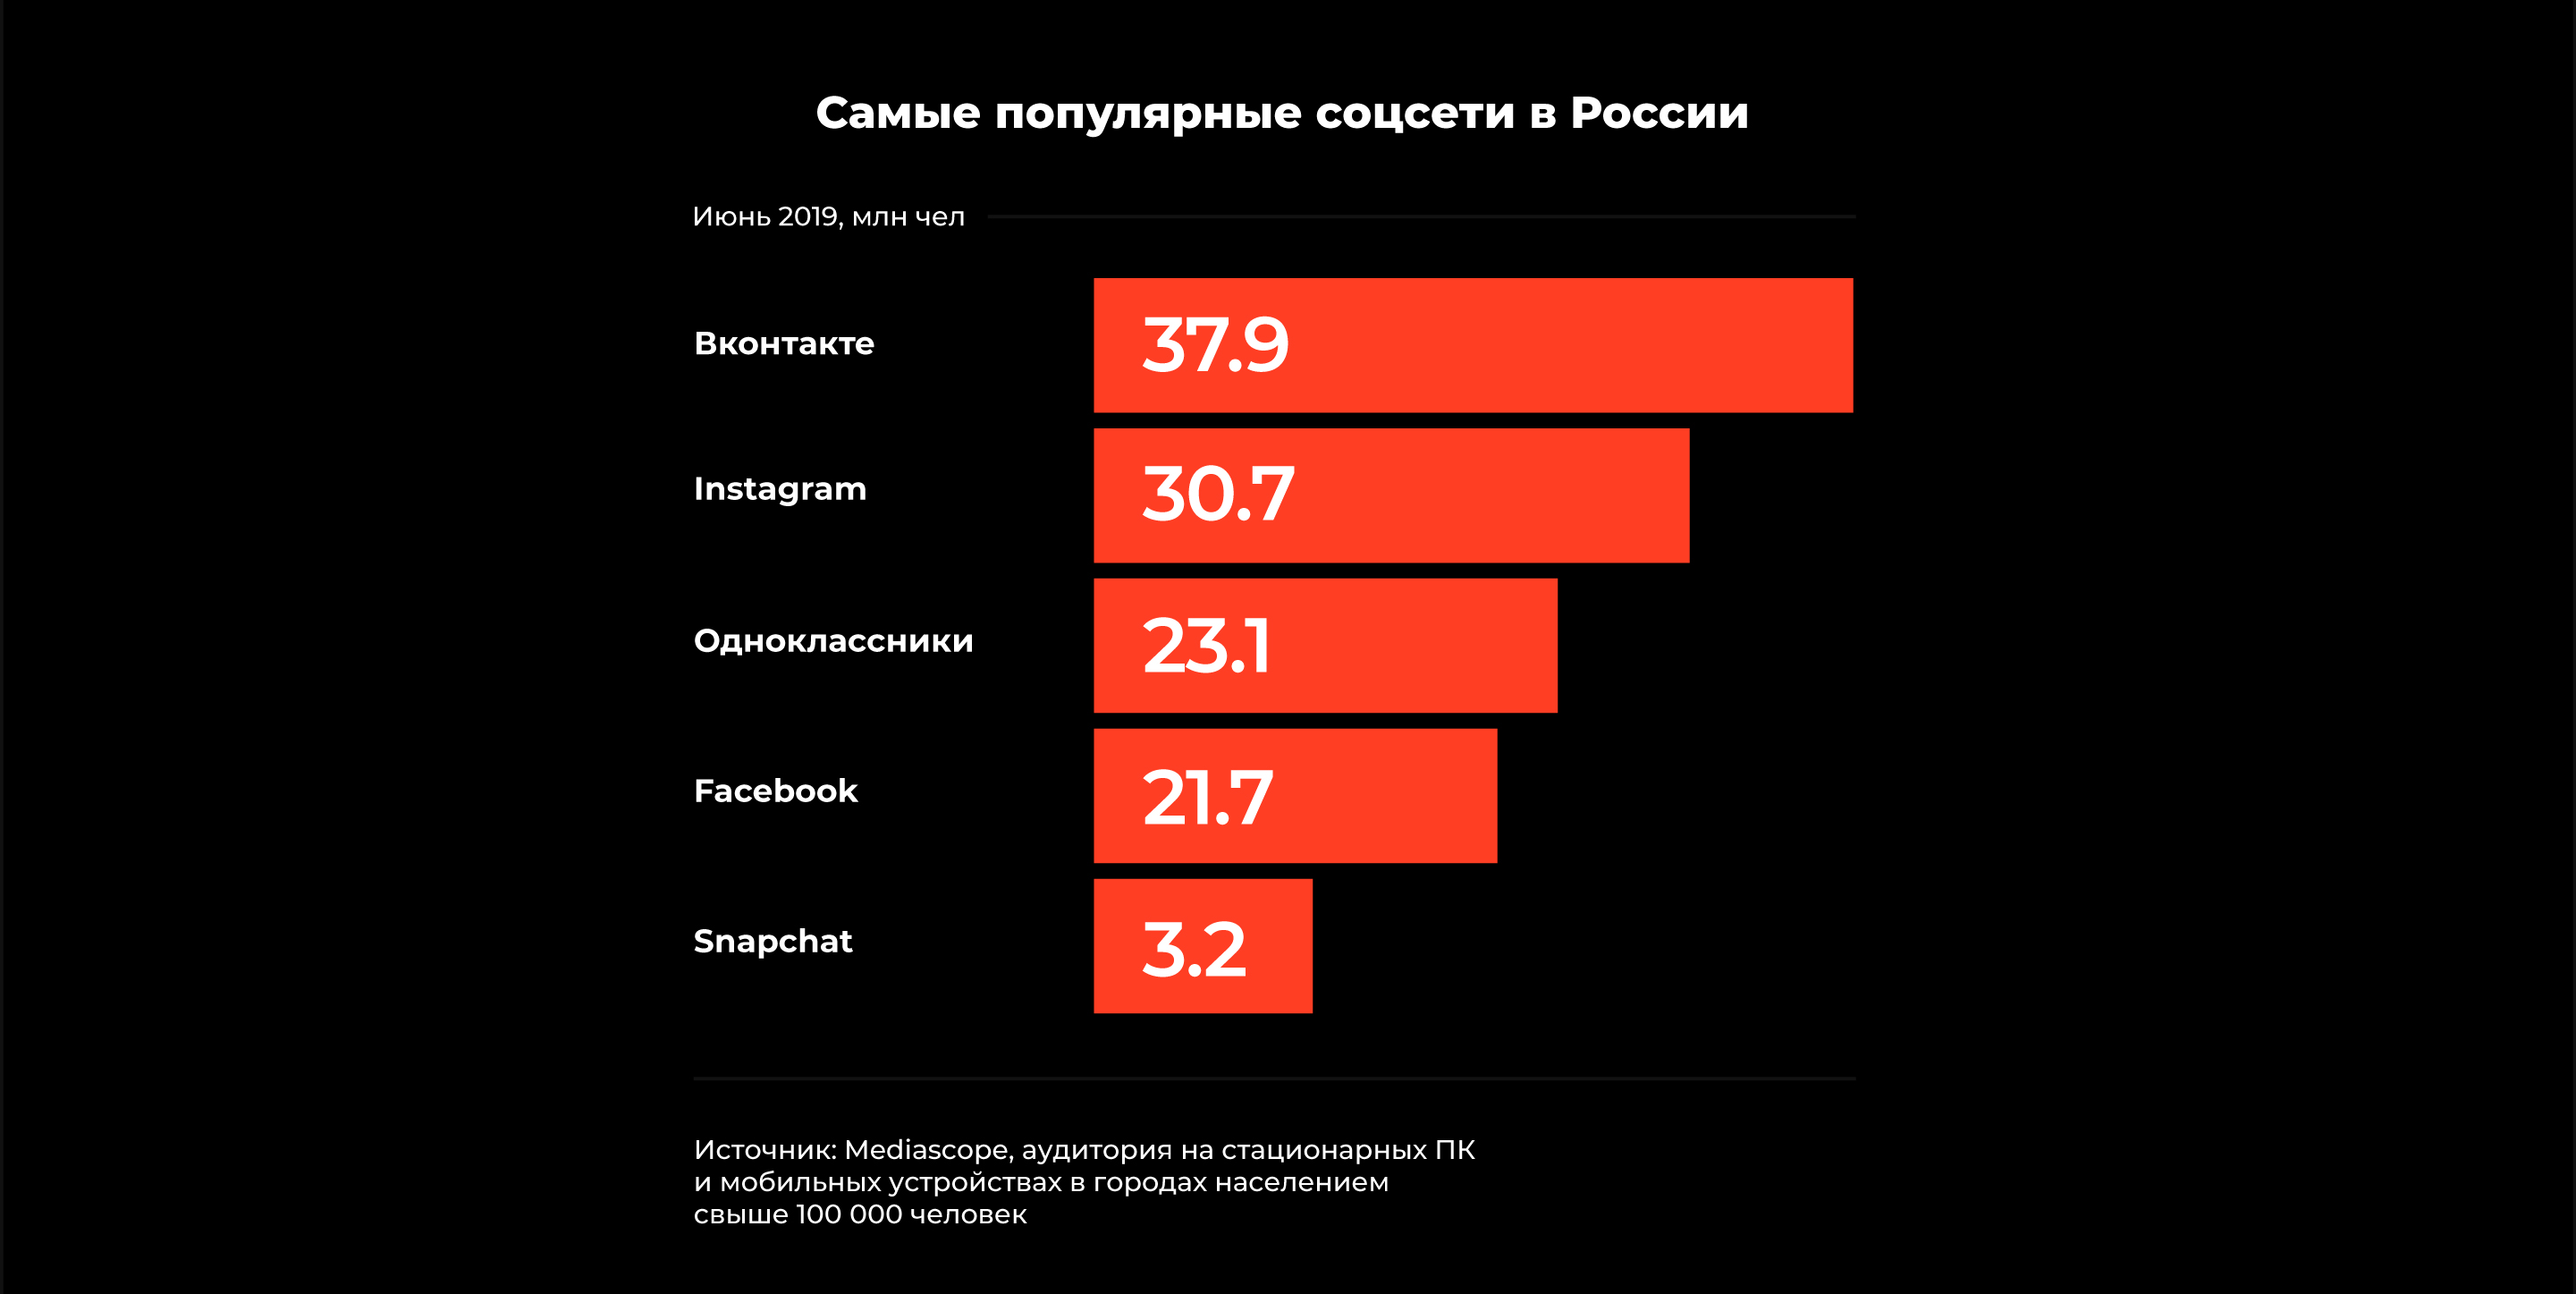 Включи самые распространенные. Популярные сети в России. Самые популярные соцсети в России. Самые популярные социальные сети. Самые популярные социальные сети в России 2020.